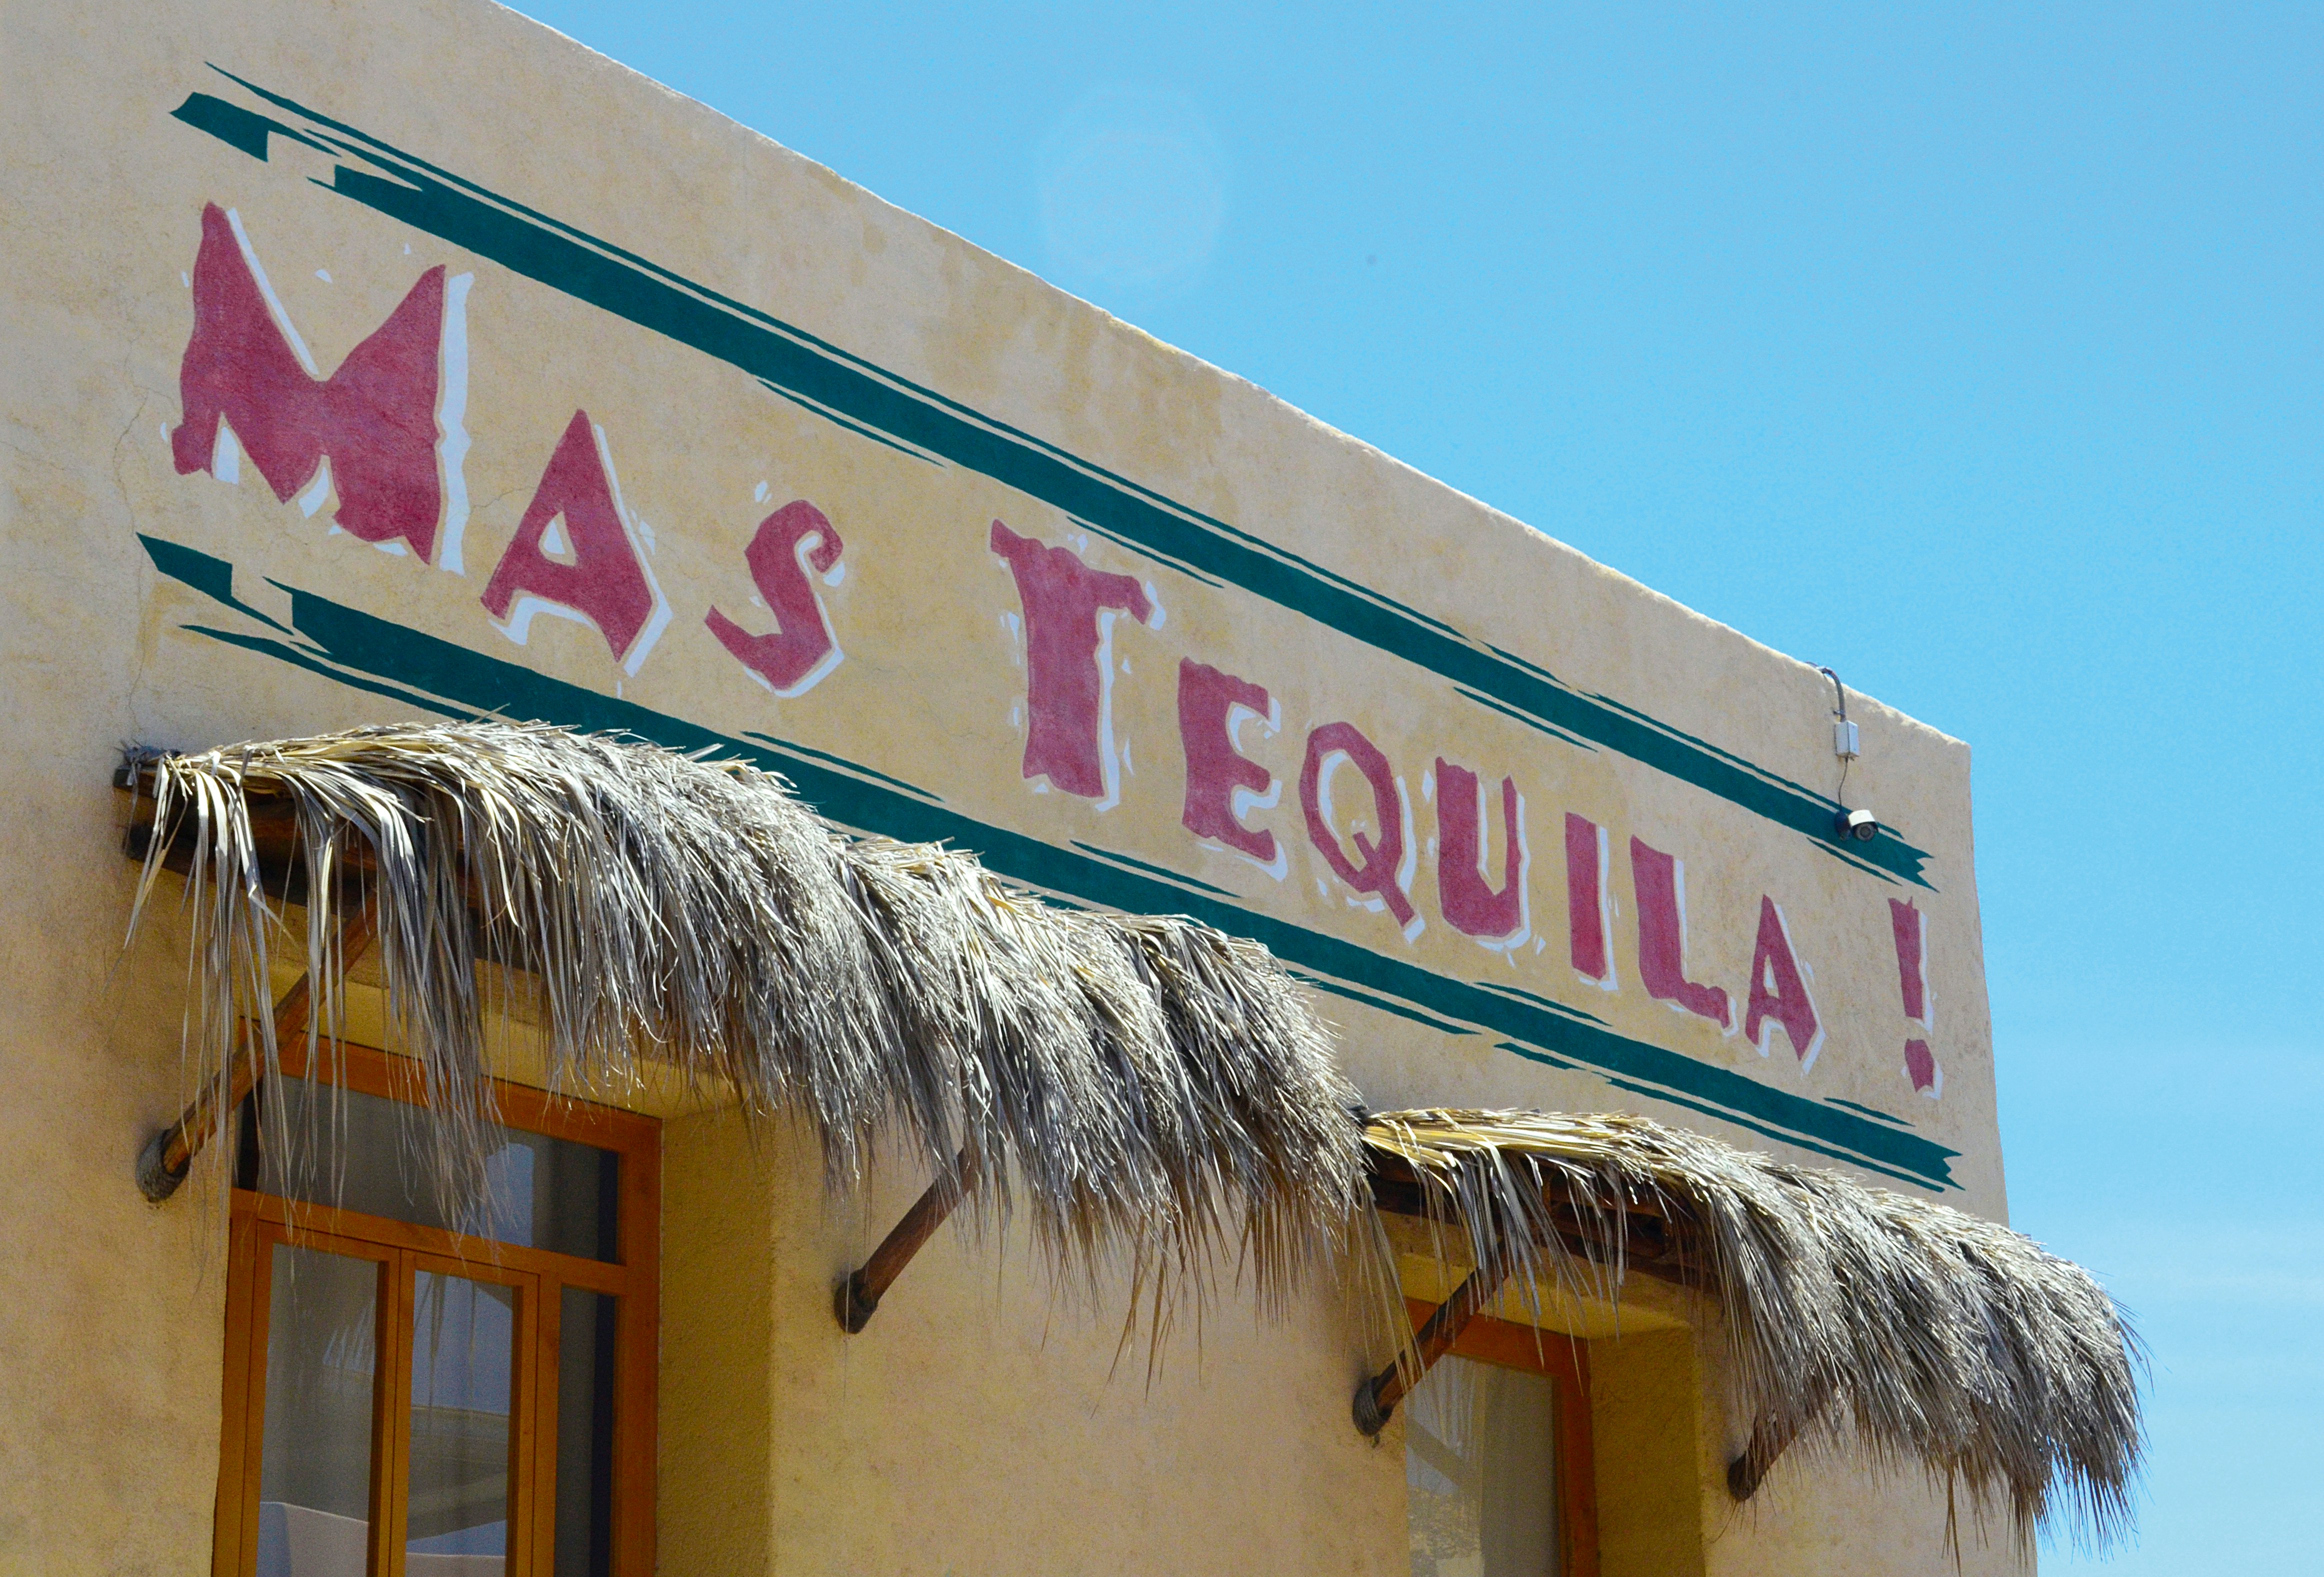 Mas Tequila facade